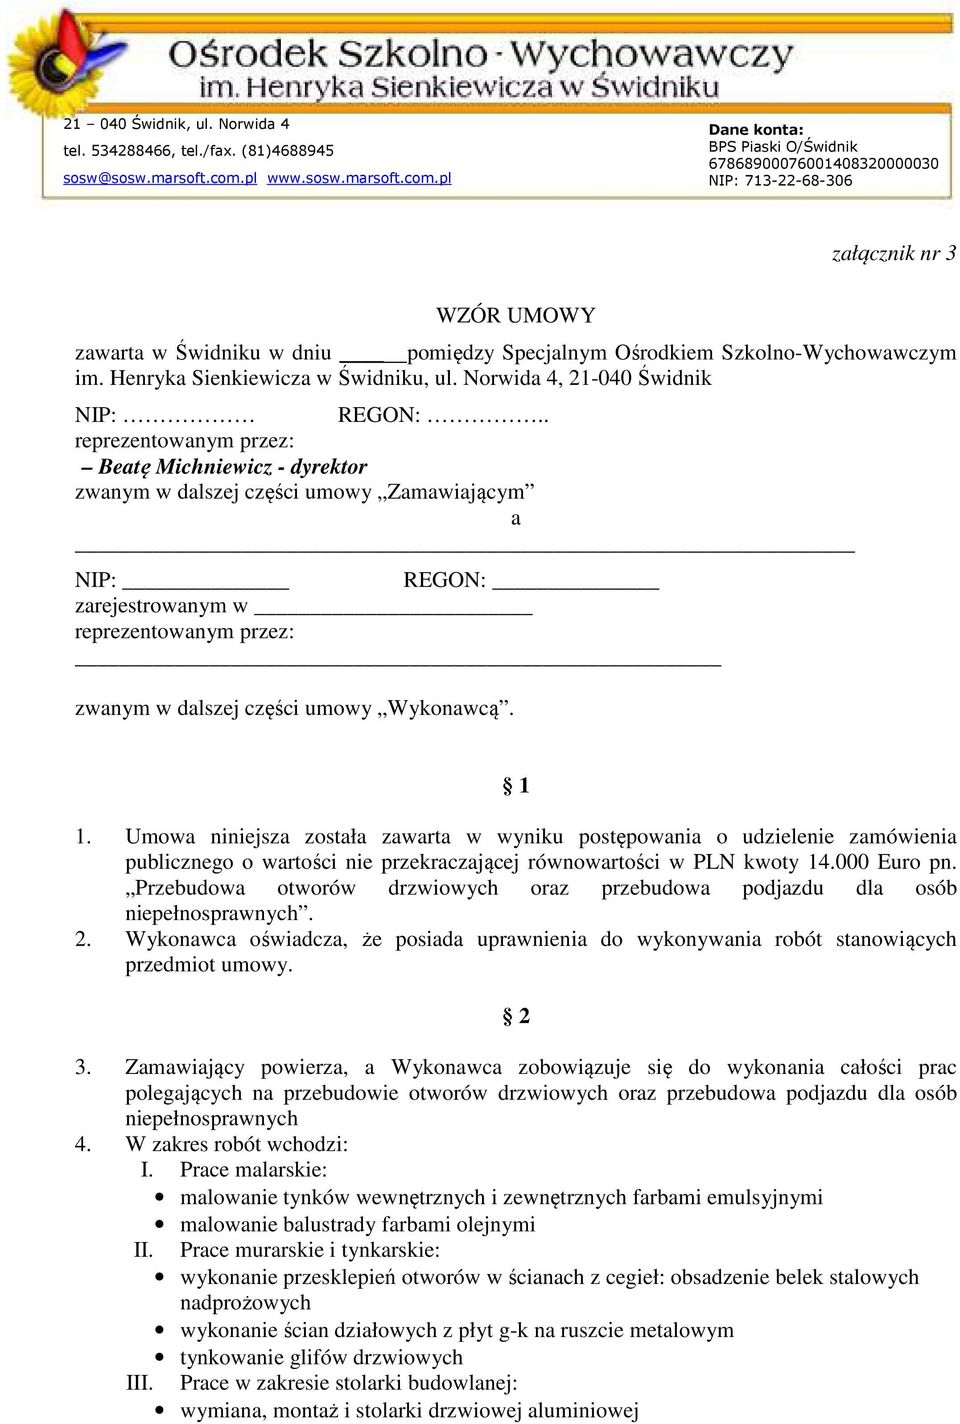 Umowa niniejsza została zawarta w wyniku postępowania o udzielenie zamówienia publicznego o wartości nie przekraczającej równowartości w PLN kwoty 14.000 Euro pn.